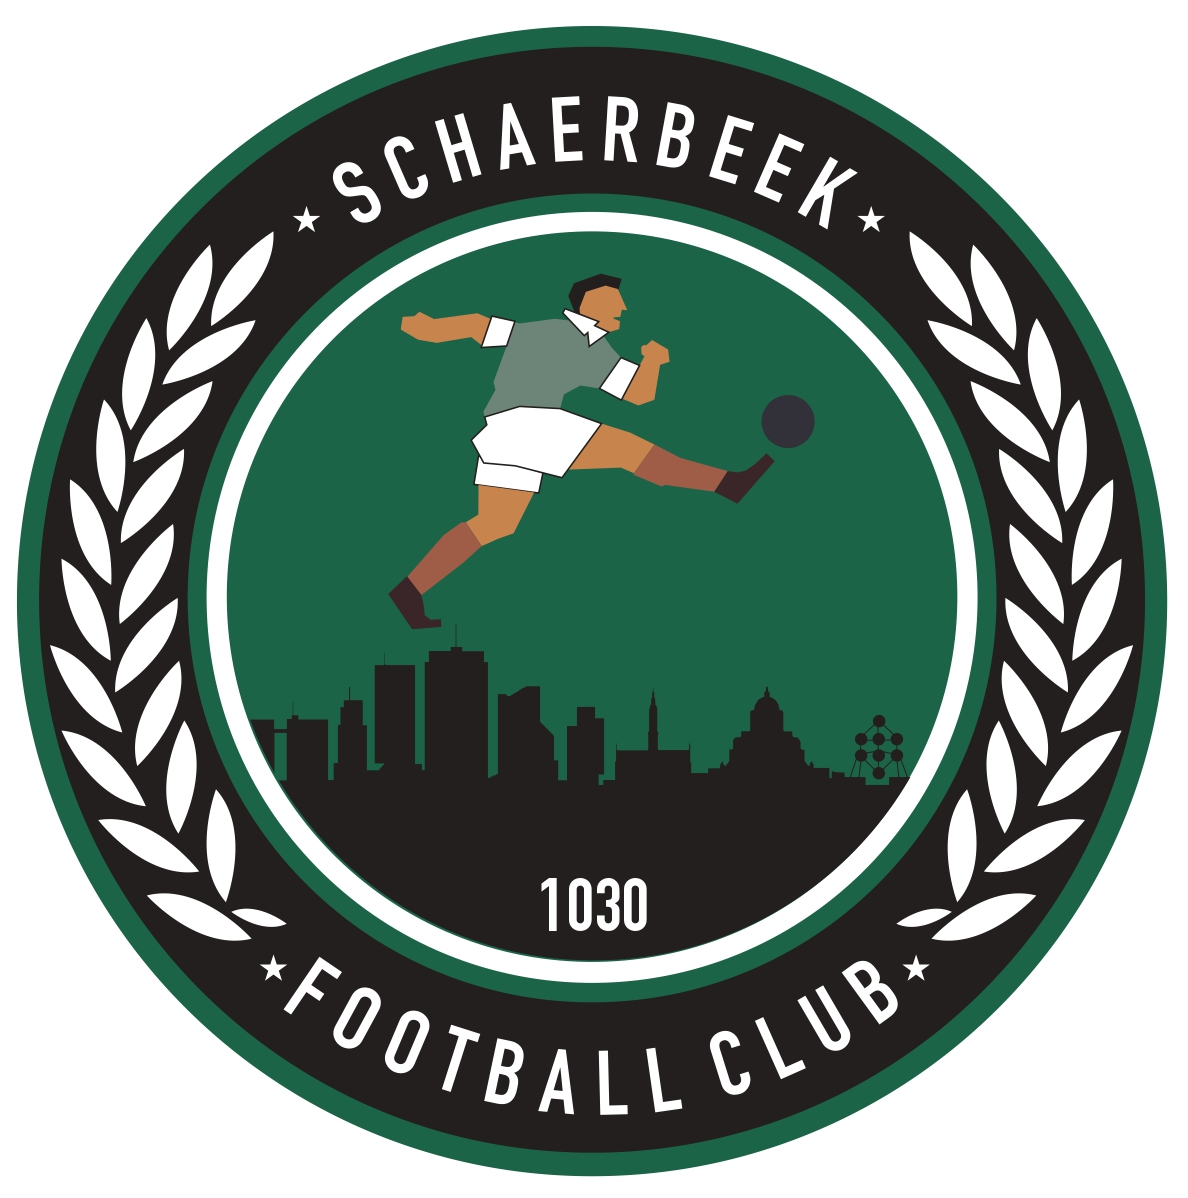 13 - Football Club Schaerbeek A